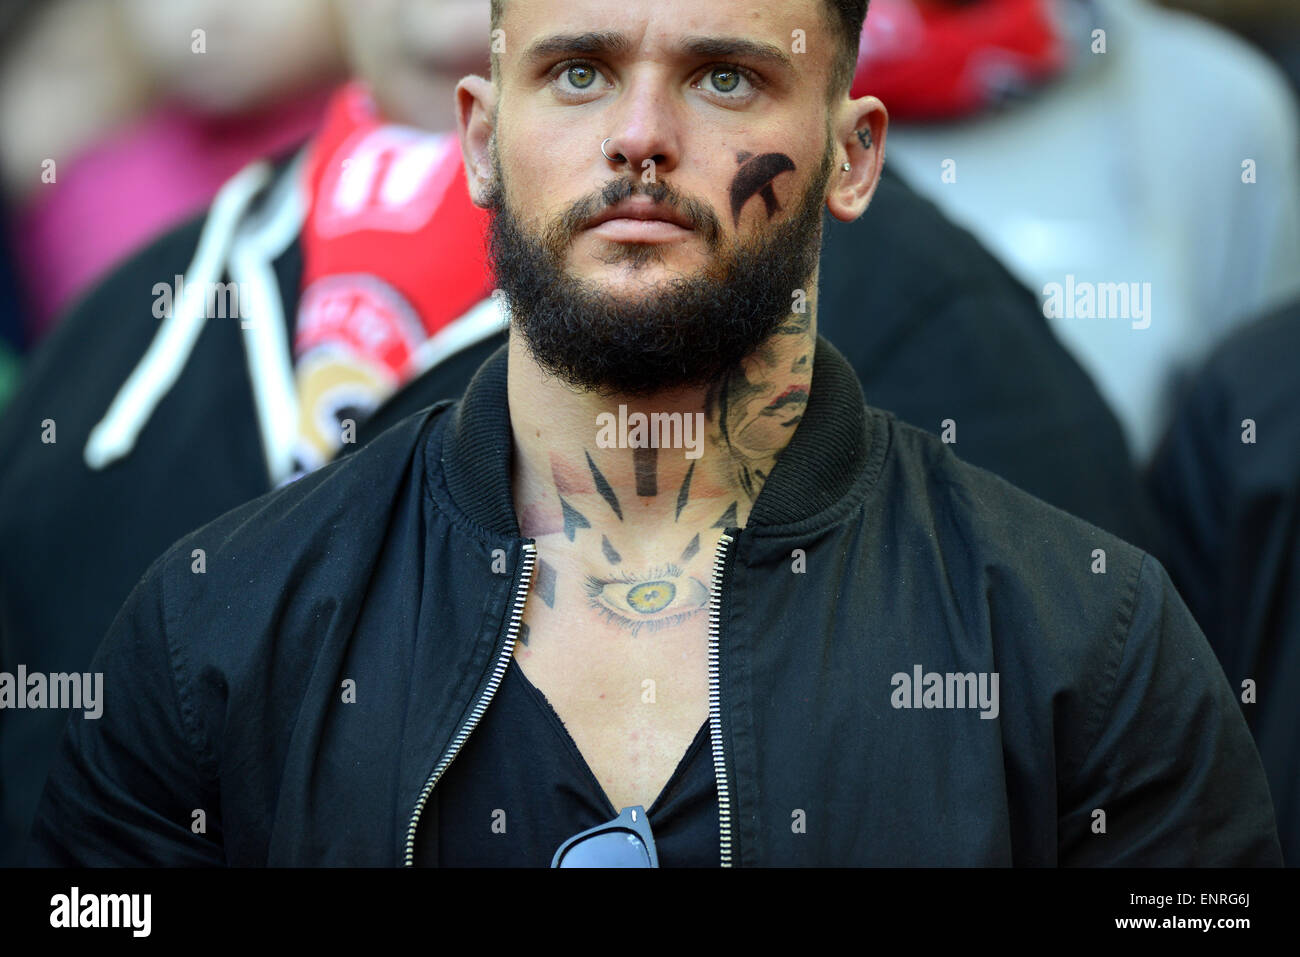 Fútbol aficionado partidario hombre macho con tatoo y tranfer facial en Johnstone's Paint 2015 Final Bristol City v Walsall Foto de stock